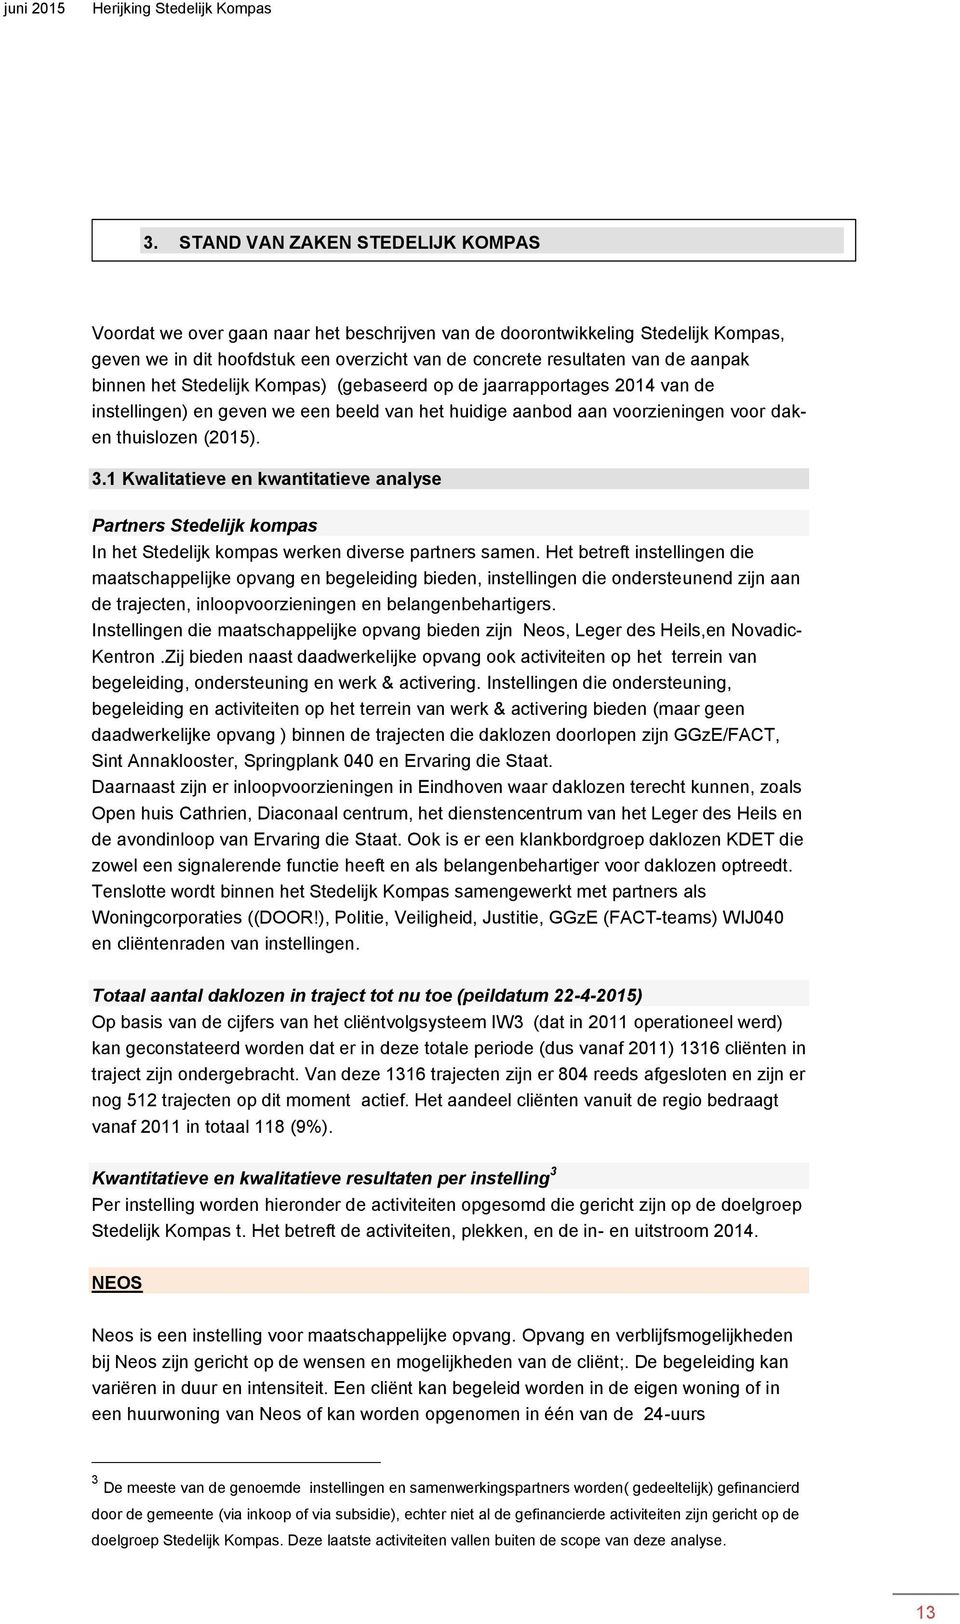 1 Kwalitatieve en kwantitatieve analyse Partners Stedelijk kompas In het Stedelijk kompas werken diverse partners samen.